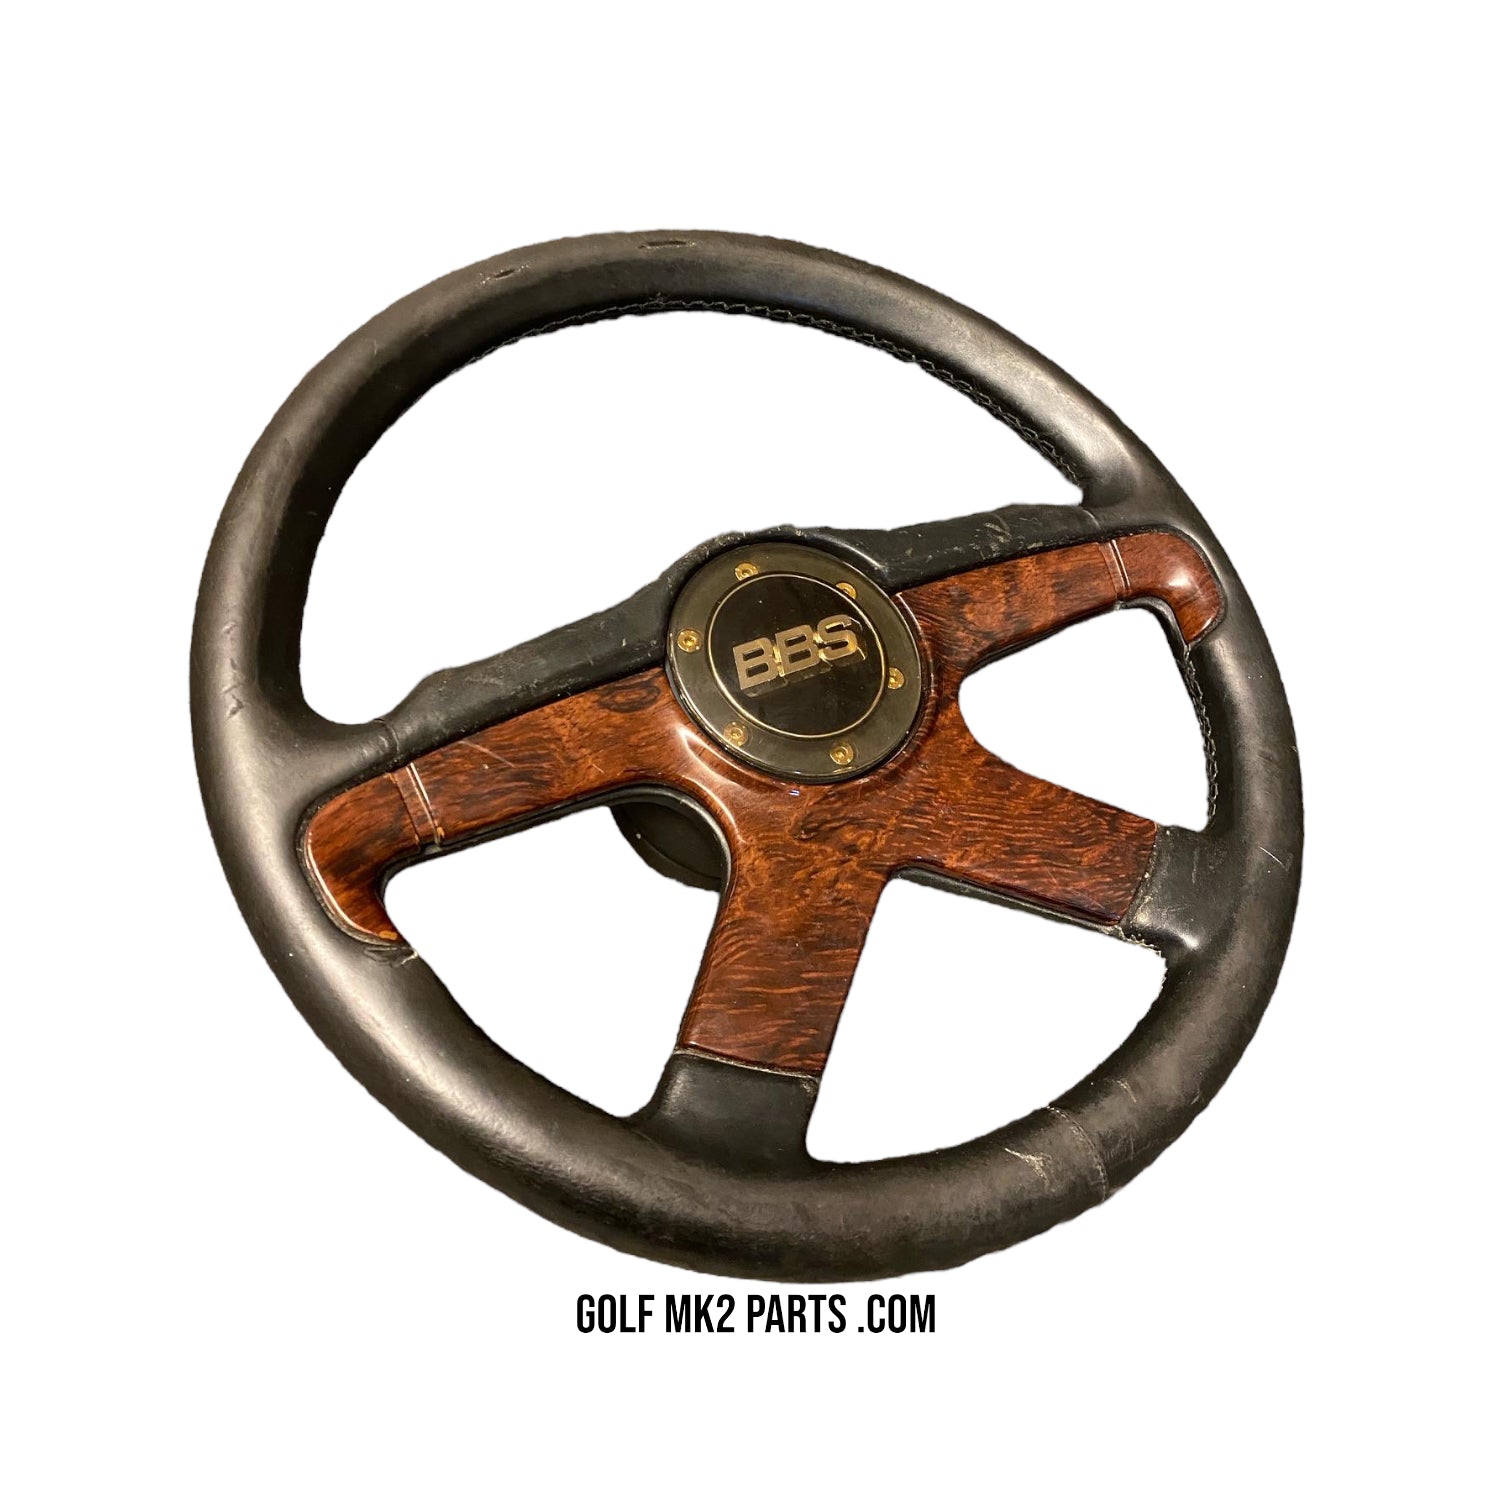 Radio - Spares and Accessories : Green aluminium steering wheel